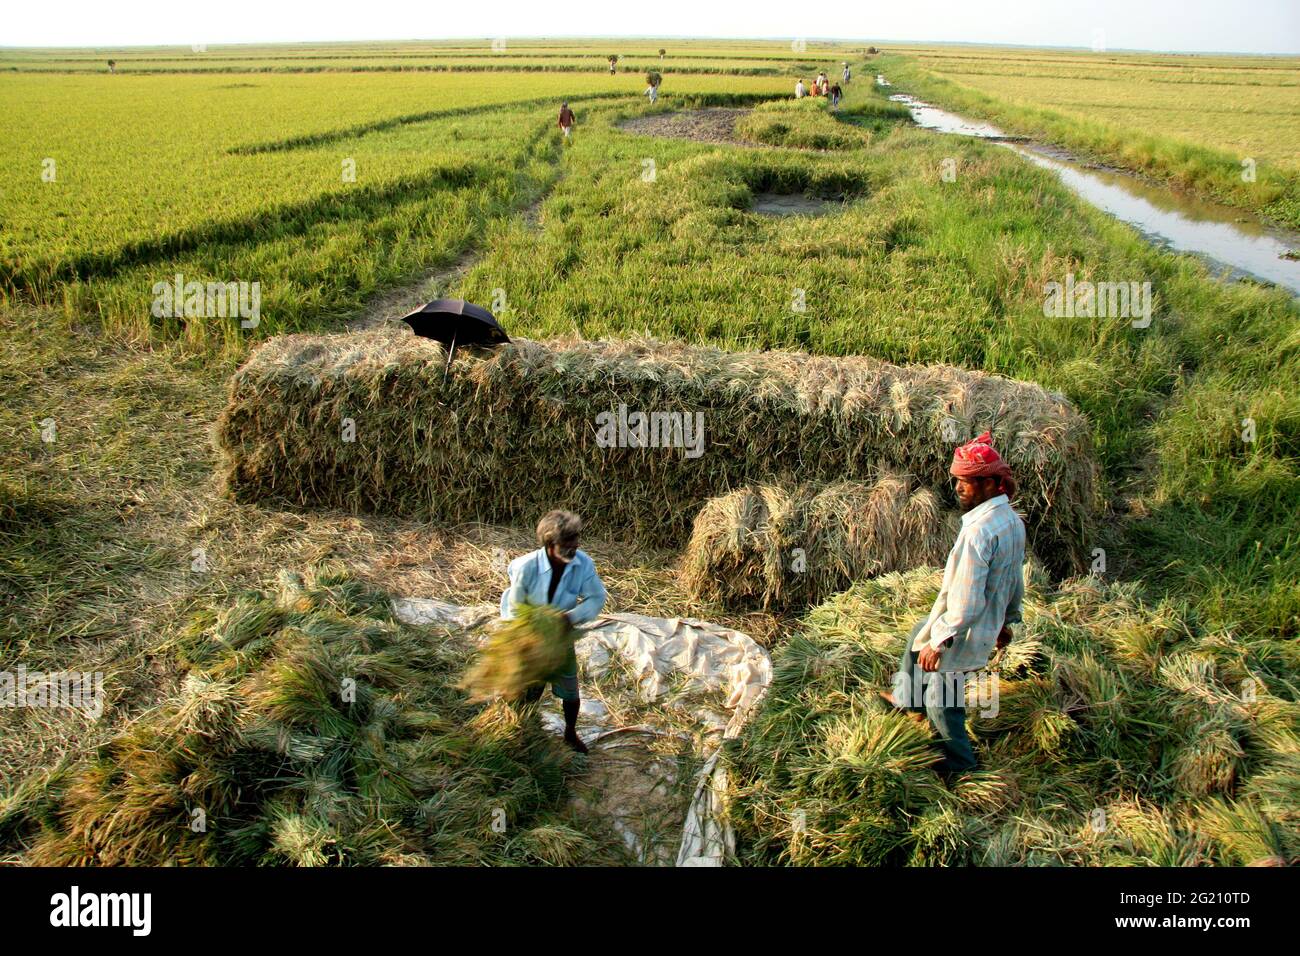 Le Bangladesh a eu une bonne récolte de «Boro», l'une des trois récoltes annuelles, cette année. Le rendement a atteint près de 60 pour cent du rendement du riz du pays. Sunamganj, Bangladesh. 29 avril 2008. Banque D'Images